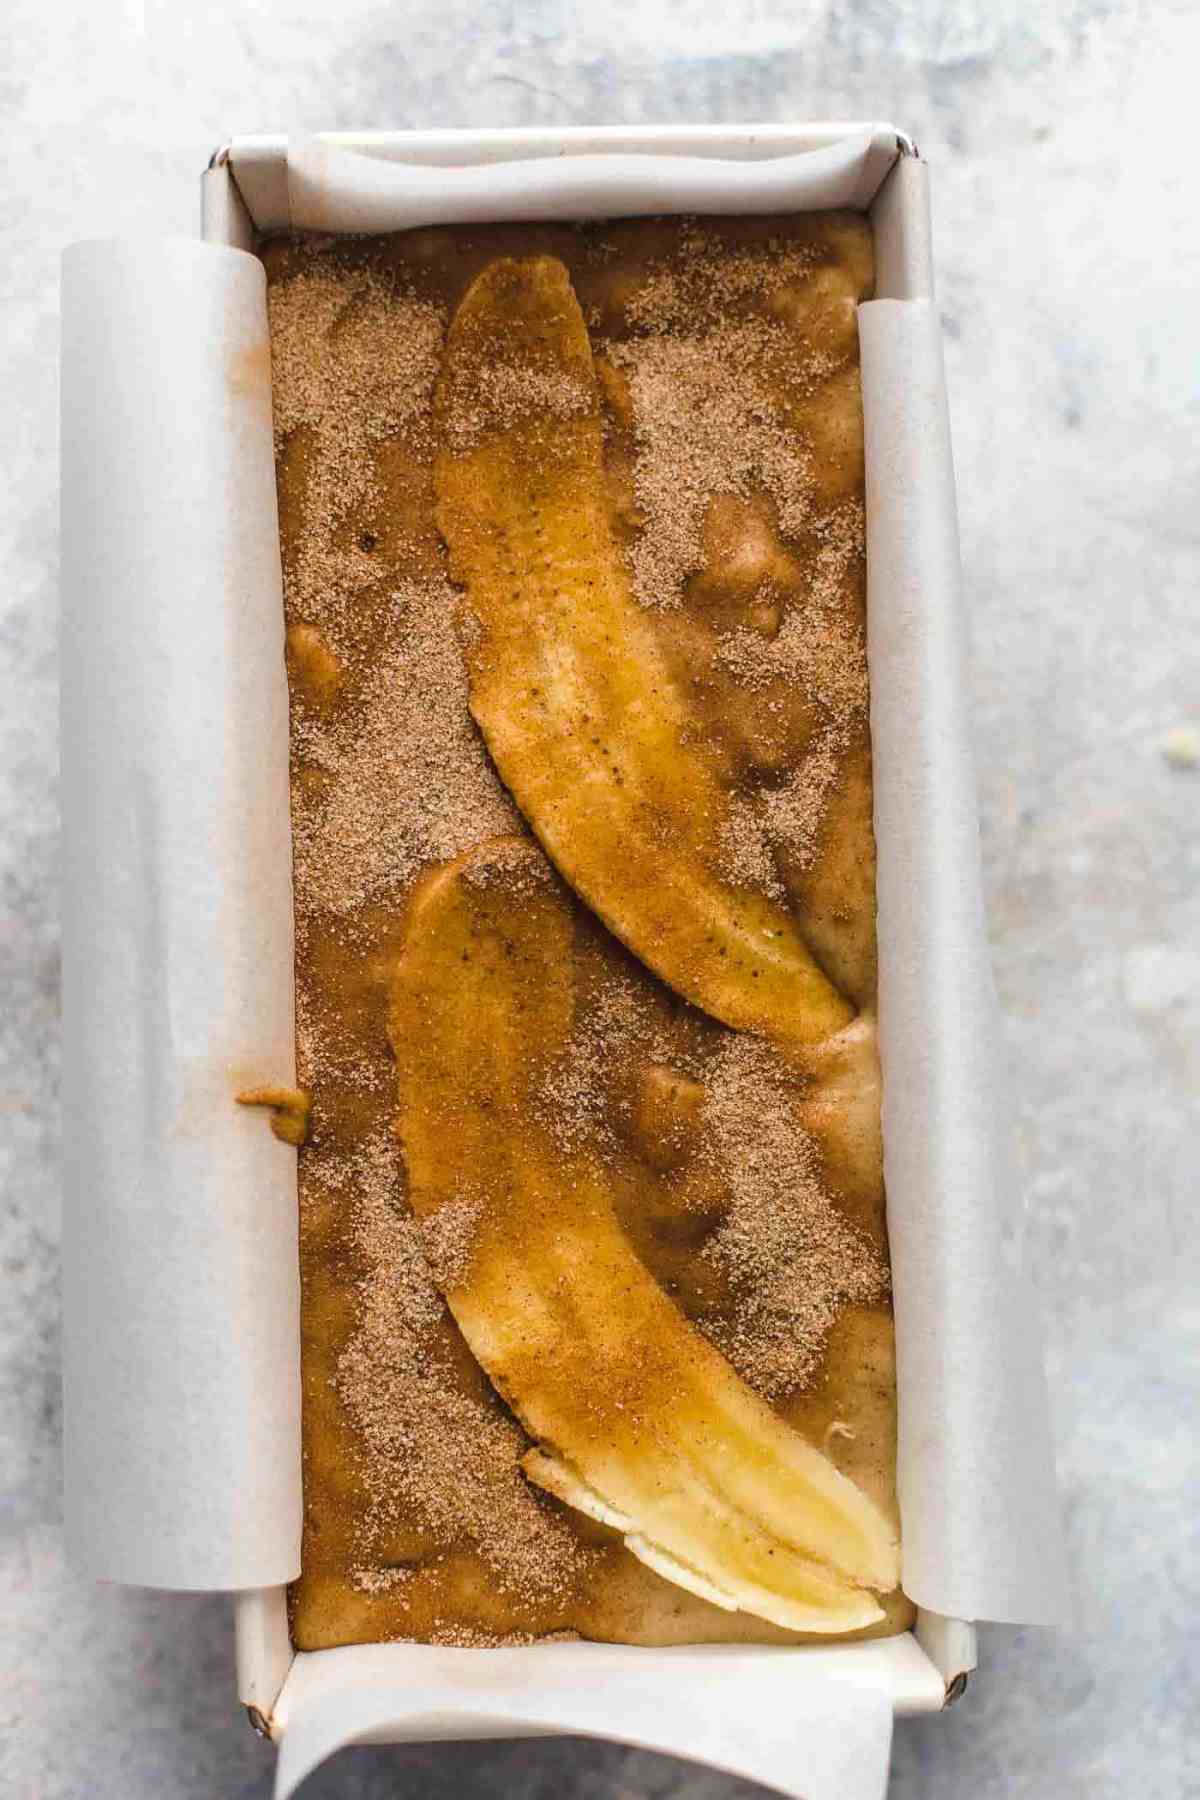 banana bread batter with bananas and sugar on top